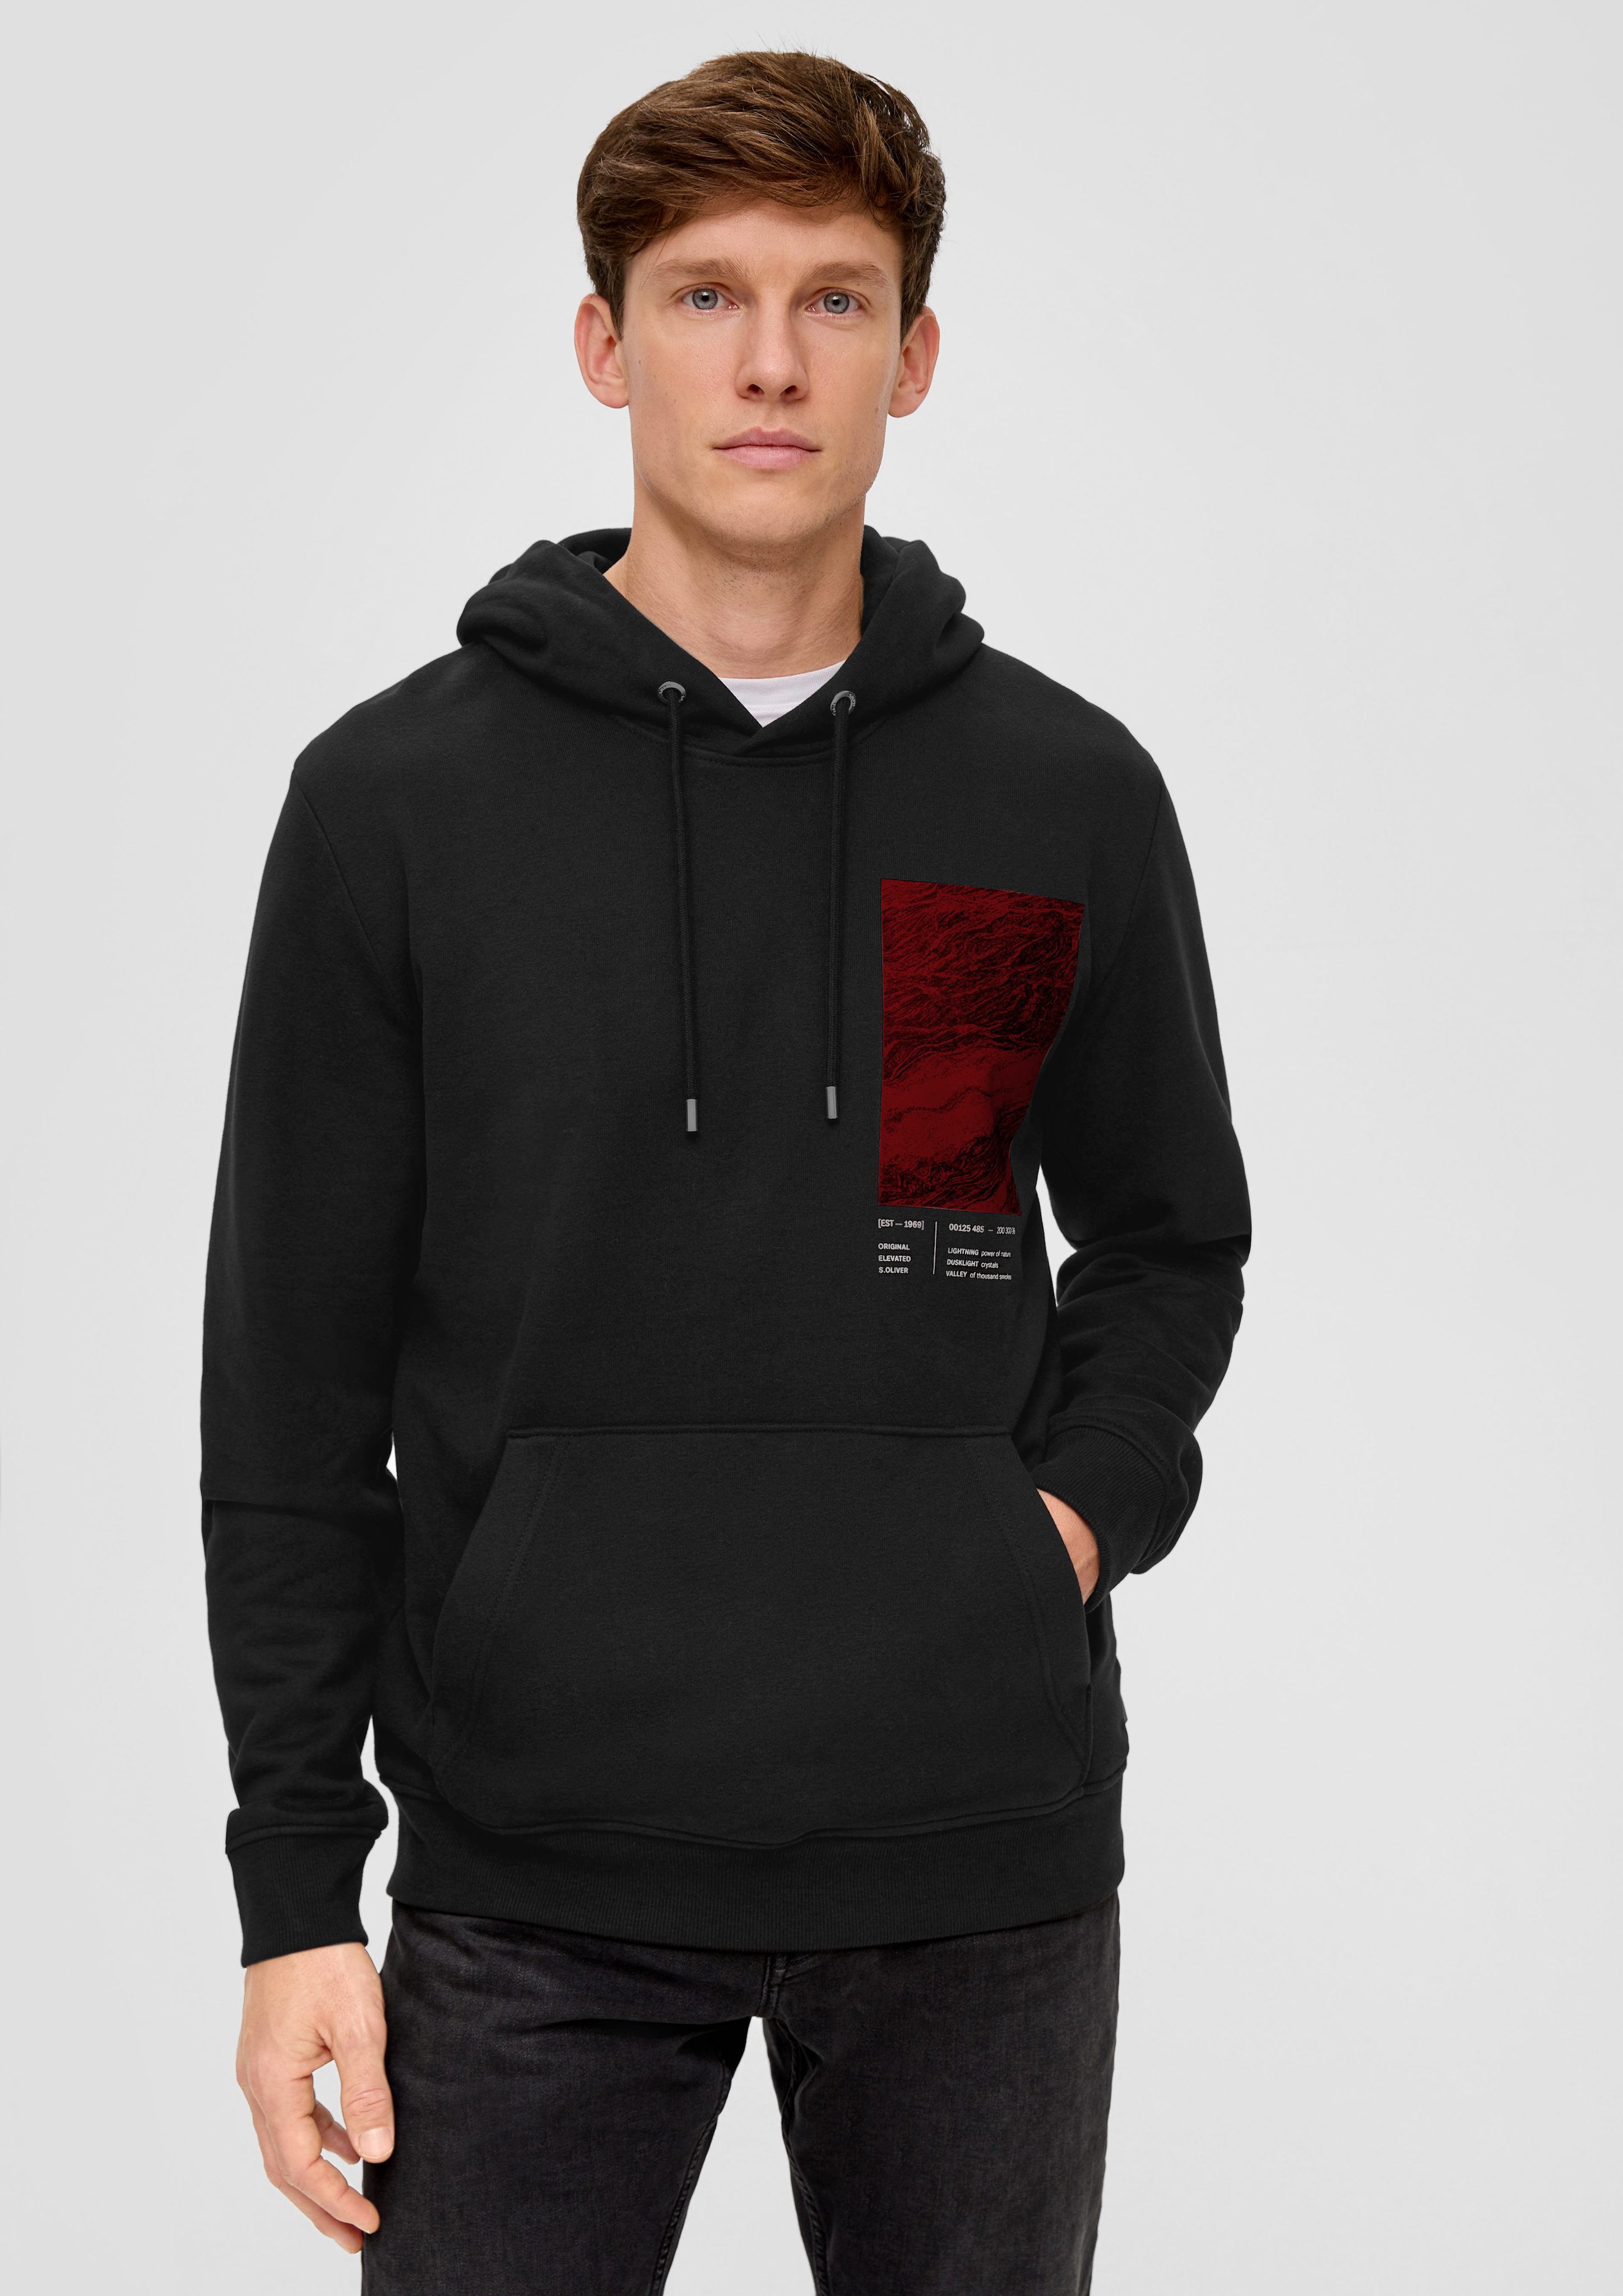 s.Oliver Sweatshirt Kapuzen-Sweatshirt mit Frontprint Blende, Logo schwarz